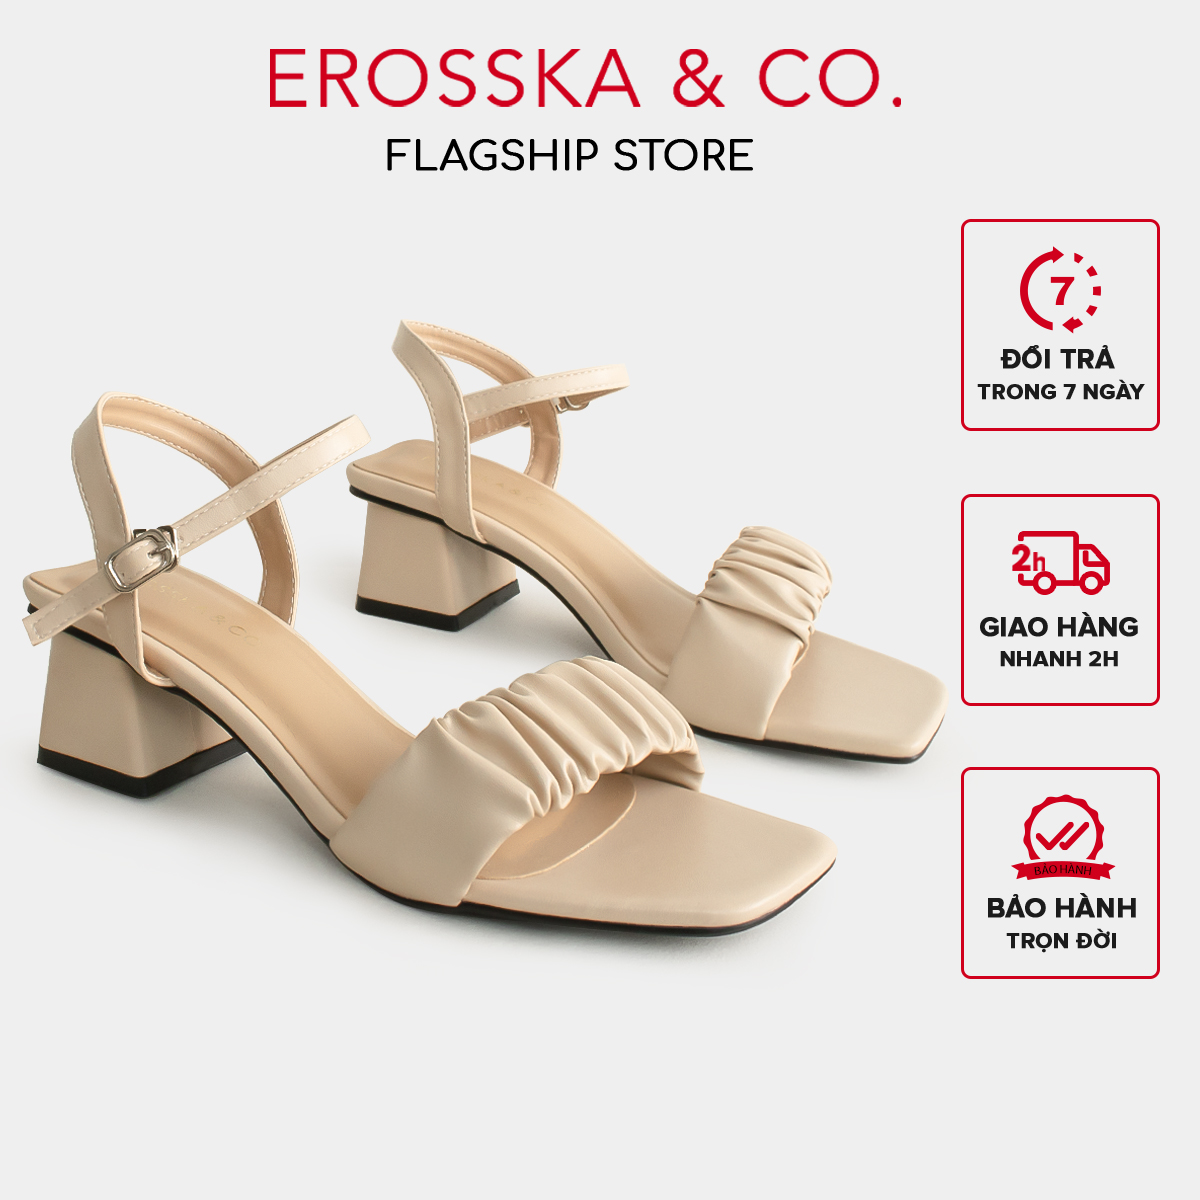 Erosska - Giày sandal cao gót nữ mũi vuông quai nhún cao 5cm màu nude - EB051